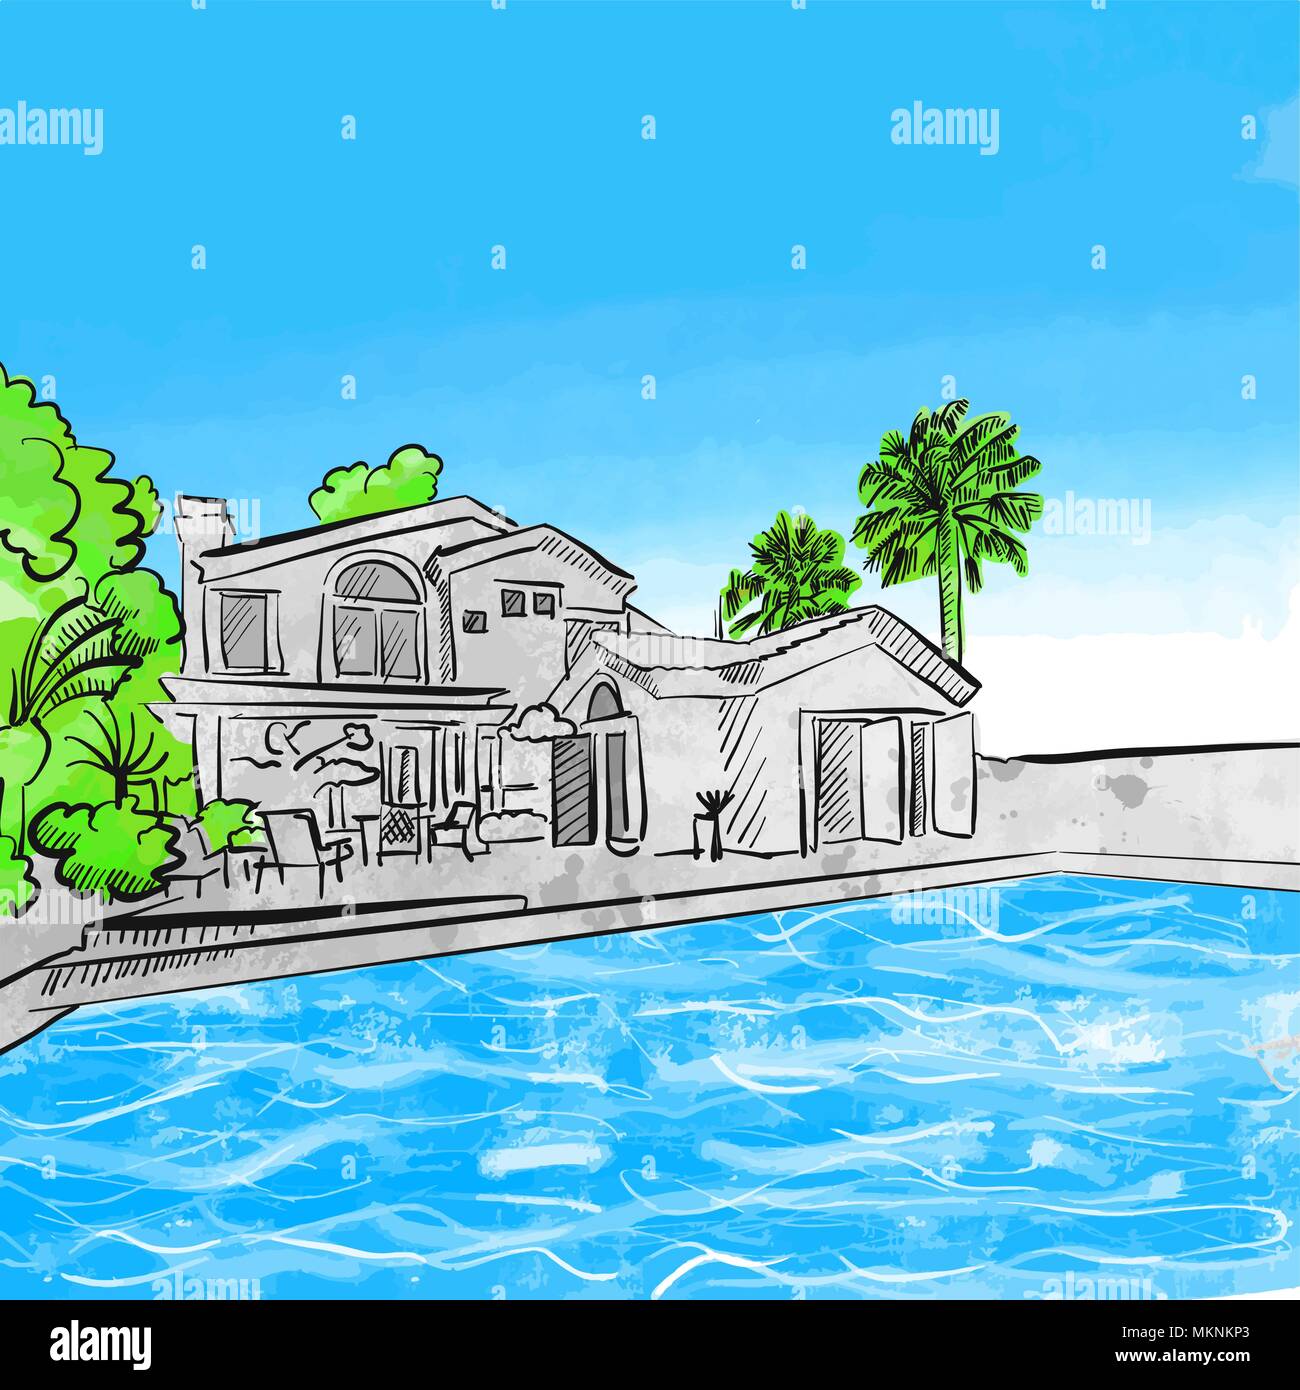 Casa y piscina concepto de dibujo, dibujado a mano ilustración vectorial Ilustración del Vector